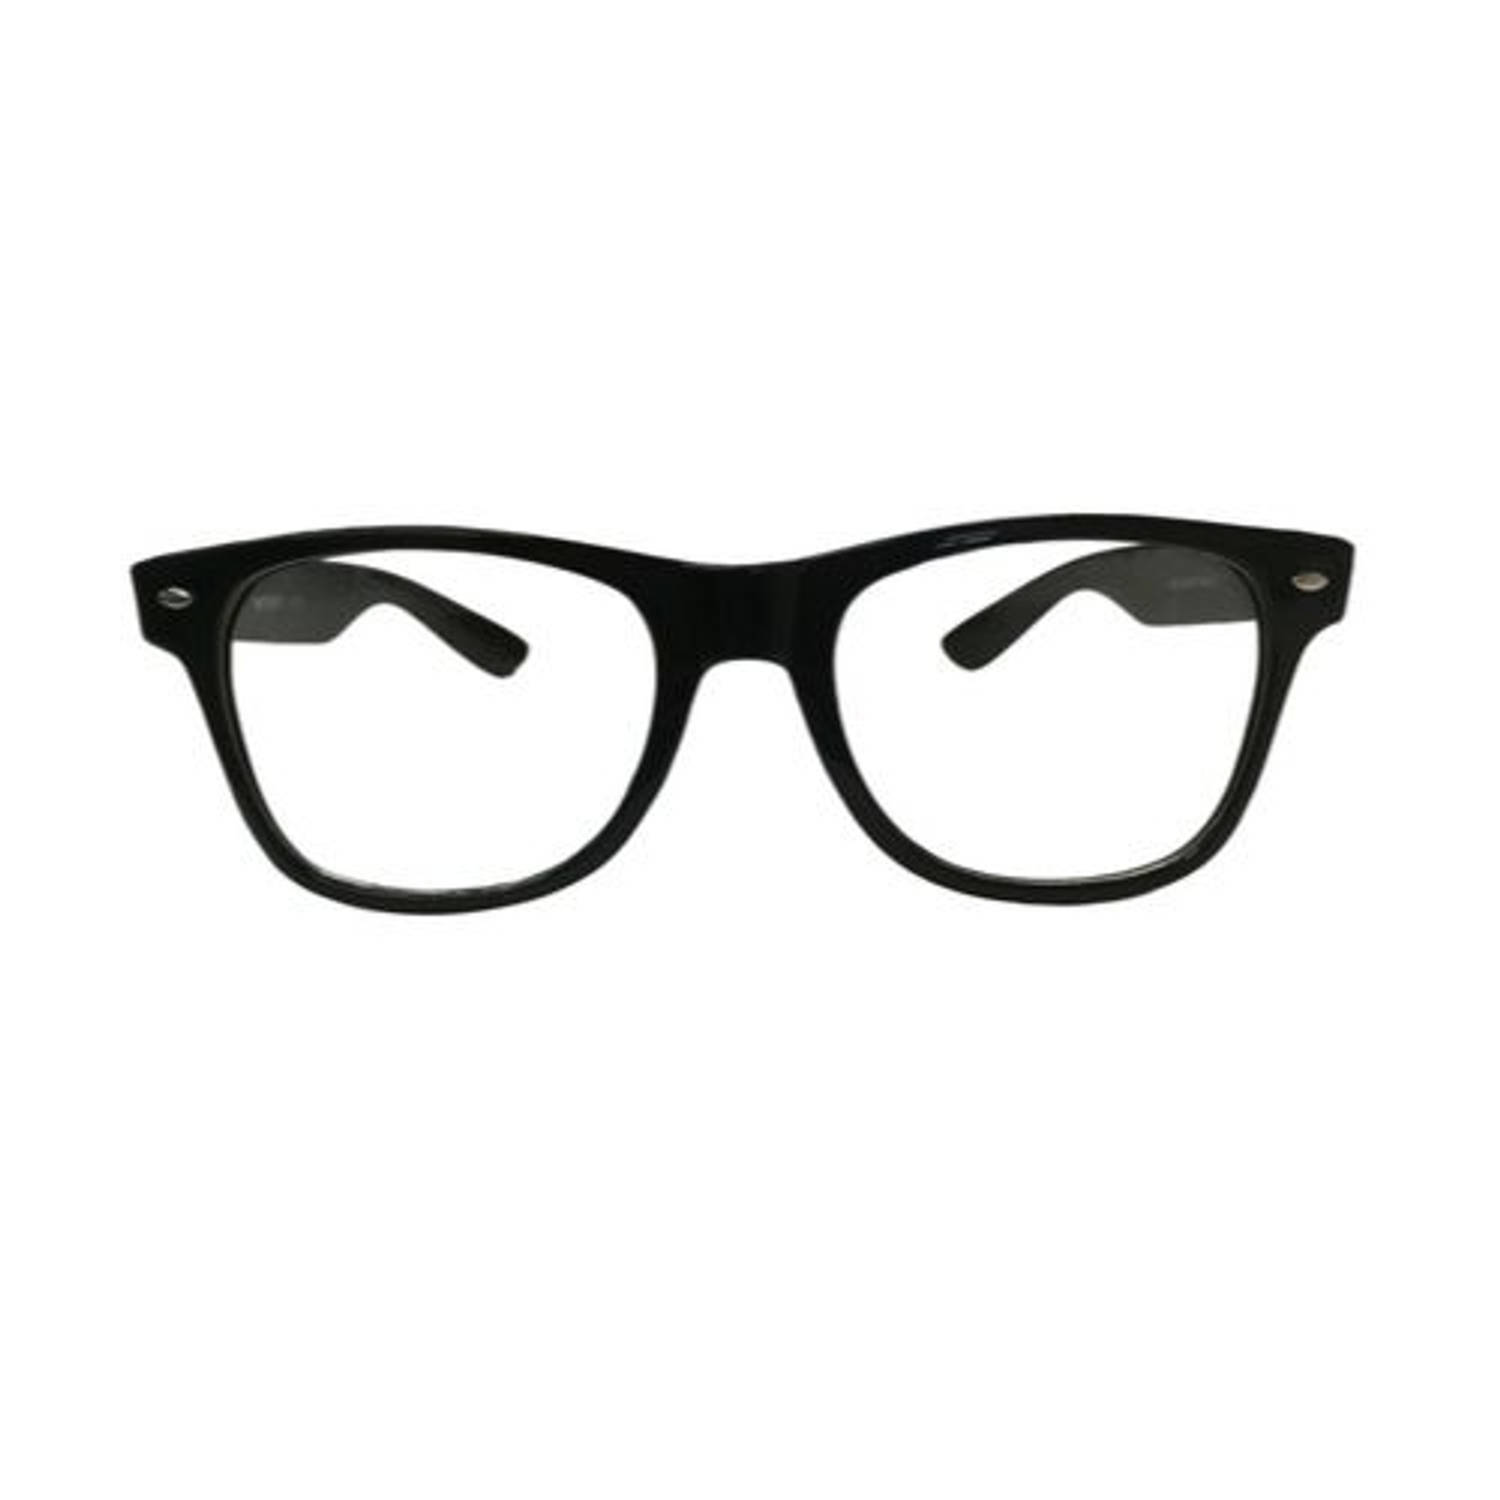 Orange85 bril zonder sterkte - Zwart - Nerdbril - Heren - Dames - Zwarte bril